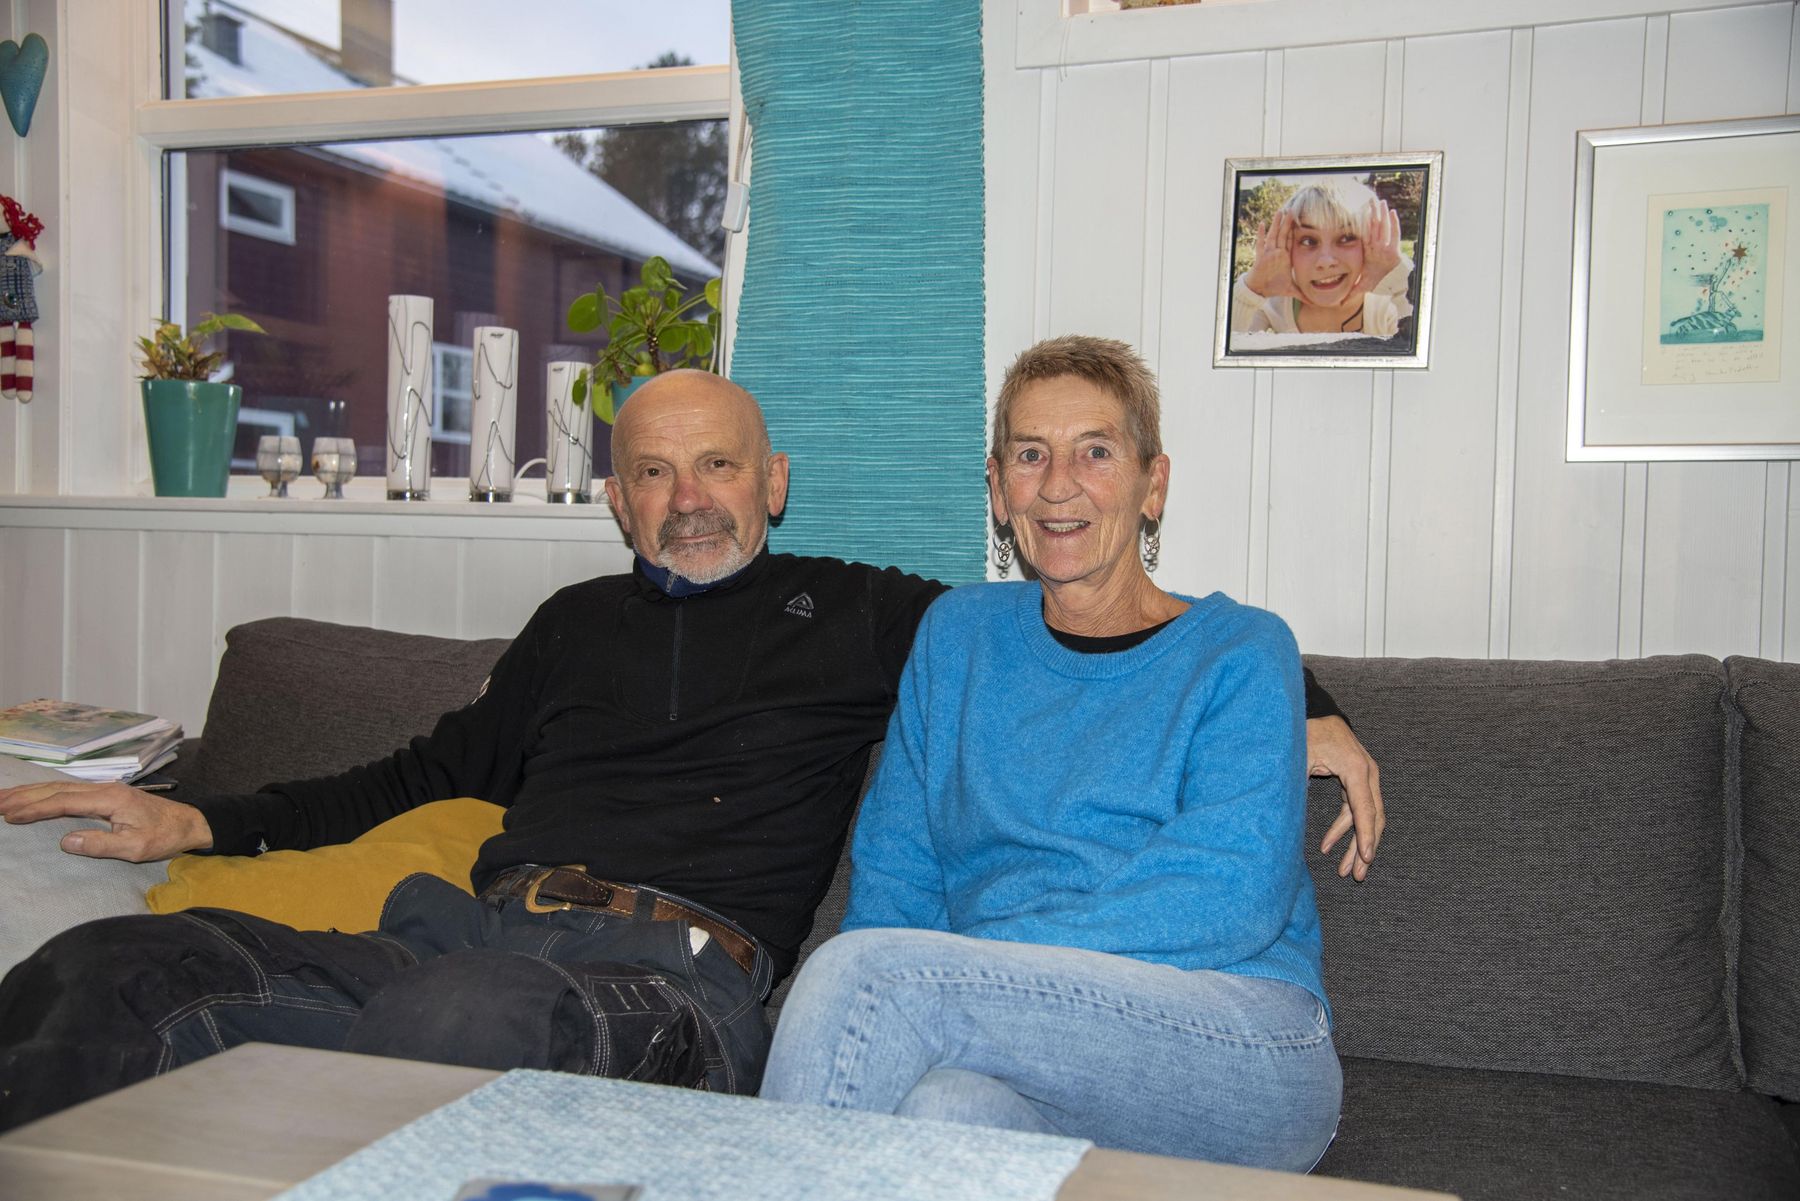 Ekteparet Viktor Johnsen og Britt Søvik kan glede seg over å våkne opp i et varmt hus etter at de har fått montert varmepumpe. ​​​​‌﻿‍﻿​‍​‍‌‍﻿﻿‌﻿​‍‌‍‍‌‌‍‌﻿‌‍‍‌‌‍﻿‍​‍​‍​﻿‍‍​‍​‍‌﻿​﻿‌‍​‌‌‍﻿‍‌‍‍‌‌﻿‌​‌﻿‍‌​‍﻿‍‌‍‍‌‌‍﻿﻿​‍​‍​‍﻿​​‍​‍‌‍‍​‌﻿​‍‌‍‌‌‌‍‌‍​‍​‍​﻿‍‍​‍​‍‌‍‍​‌﻿‌​‌﻿‌​‌﻿​​‌﻿​﻿​﻿‍‍​‍﻿﻿​‍﻿﻿‌‍‍‌‌﻿​﻿‌‍‍​‌‍​‌‌﻿‌‍‌﻿​﻿‌‍‍﻿‌﻿​‍‌‍​‌‌‍‌‍‌﻿‌​​‍﻿‍‌﻿​﻿‌‍​‌‌‍﻿‍‌‍‍‌‌﻿‌​‌﻿‍‌​‍﻿‍‌﻿​﻿‌﻿‌​‌﻿‌‌‌‍‌​‌‍‍‌‌‍﻿﻿​‍﻿﻿‌‍‍‌‌‍﻿‍‌﻿‌​‌‍‌‌‌‍﻿‍‌﻿‌​​‍﻿﻿‌‍‌‌‌‍‌​‌‍‍‌‌﻿‌​​‍﻿﻿‌‍﻿‌‌‍﻿﻿‌‍‌​‌‍‌‌​﻿﻿‌‌﻿​​‌﻿​‍‌‍‌‌‌﻿​﻿‌‍‌‌‌‍﻿‍‌﻿‌​‌‍​‌‌﻿‌​‌‍‍‌‌‍﻿﻿‌‍﻿‍​﻿‍﻿‌‍‍‌‌‍‌​​﻿﻿‌‌‍​‌‌‍‌​​﻿‍​‌‍‌​​﻿‌‍​﻿‌‍​﻿​﻿‌‍​‌​‍﻿‌‌‍‌​​﻿‌﻿​﻿‌‌​﻿​​​‍﻿‌​﻿‌​‌‍​﻿​﻿‌‍​﻿‌﻿​‍﻿‌‌‍​‍​﻿‌‌‌‍‌‍​﻿‌​​‍﻿‌‌‍‌​​﻿‍‌‌‍‌​​﻿‌﻿​﻿‌‌​﻿​﻿​﻿‌﻿​﻿‌﻿‌‍​﻿​﻿​﻿‌‍​‍‌‍‌‌​﻿‍﻿‌﻿‌​‌﻿‍‌‌﻿​​‌‍‌‌​﻿﻿‌‌‍​‌‌﻿​‍‌﻿‌​‌‍‍‌‌‍​﻿‌‍﻿​‌‍‌‌​﻿‍﻿‌﻿​​‌‍​‌‌﻿‌​‌‍‍​​﻿﻿‌‌‍​﻿‌‍﻿﻿‌‍﻿‍‌﻿‌​‌‍‌‌‌‍﻿‍‌﻿‌​​‍‌‌​﻿‌‌‌​​‍‌‌﻿﻿‌‍‍﻿‌‍‌‌‌﻿‍‌​‍‌‌​﻿​﻿‌​‌​​‍‌‌​﻿​﻿‌​‌​​‍‌‌​﻿​‍​﻿​‍​﻿‌​‌‍‌​​﻿‌‍‌‍‌​‌‍‌‍‌‍​‍​﻿‍​​﻿​‍​﻿​﻿​﻿‌‍‌‍​﻿​﻿​‍​‍‌‌​﻿​‍​﻿​‍​‍‌‌​﻿‌‌‌​‌​​‍﻿‍‌‍​‌‌‍﻿​‌﻿‌​​﻿﻿﻿‌‍​‍‌‍​‌‌﻿​﻿‌‍‌‌‌‌‌‌‌﻿​‍‌‍﻿​​﻿﻿‌‌‍‍​‌﻿‌​‌﻿‌​‌﻿​​‌﻿​﻿​‍‌‌​﻿​﻿‌​​‌​‍‌‌​﻿​‍‌​‌‍​‍‌‌​﻿​‍‌​‌‍‌‍‍‌‌﻿​﻿‌‍‍​‌‍​‌‌﻿‌‍‌﻿​﻿‌‍‍﻿‌﻿​‍‌‍​‌‌‍‌‍‌﻿‌​​‍﻿‍‌﻿​﻿‌‍​‌‌‍﻿‍‌‍‍‌‌﻿‌​‌﻿‍‌​‍﻿‍‌﻿​﻿‌﻿‌​‌﻿‌‌‌‍‌​‌‍‍‌‌‍﻿﻿​‍‌‍‌‍‍‌‌‍‌​​﻿﻿‌‌‍​‌‌‍‌​​﻿‍​‌‍‌​​﻿‌‍​﻿‌‍​﻿​﻿‌‍​‌​‍﻿‌‌‍‌​​﻿‌﻿​﻿‌‌​﻿​​​‍﻿‌​﻿‌​‌‍​﻿​﻿‌‍​﻿‌﻿​‍﻿‌‌‍​‍​﻿‌‌‌‍‌‍​﻿‌​​‍﻿‌‌‍‌​​﻿‍‌‌‍‌​​﻿‌﻿​﻿‌‌​﻿​﻿​﻿‌﻿​﻿‌﻿‌‍​﻿​﻿​﻿‌‍​‍‌‍‌‌​‍‌‍‌﻿‌​‌﻿‍‌‌﻿​​‌‍‌‌​﻿﻿‌‌‍​‌‌﻿​‍‌﻿‌​‌‍‍‌‌‍​﻿‌‍﻿​‌‍‌‌​‍‌‍‌﻿​​‌‍​‌‌﻿‌​‌‍‍​​﻿﻿‌‌‍​﻿‌‍﻿﻿‌‍﻿‍‌﻿‌​‌‍‌‌‌‍﻿‍‌﻿‌​​‍‌‌​﻿‌‌‌​​‍‌‌﻿﻿‌‍‍﻿‌‍‌‌‌﻿‍‌​‍‌‌​﻿​﻿‌​‌​​‍‌‌​﻿​﻿‌​‌​​‍‌‌​﻿​‍​﻿​‍​﻿‌​‌‍‌​​﻿‌‍‌‍‌​‌‍‌‍‌‍​‍​﻿‍​​﻿​‍​﻿​﻿​﻿‌‍‌‍​﻿​﻿​‍​‍‌‌​﻿​‍​﻿​‍​‍‌‌​﻿‌‌‌​‌​​‍﻿‍‌‍​‌‌‍﻿​‌﻿‌​​‍​‍‌﻿﻿‌